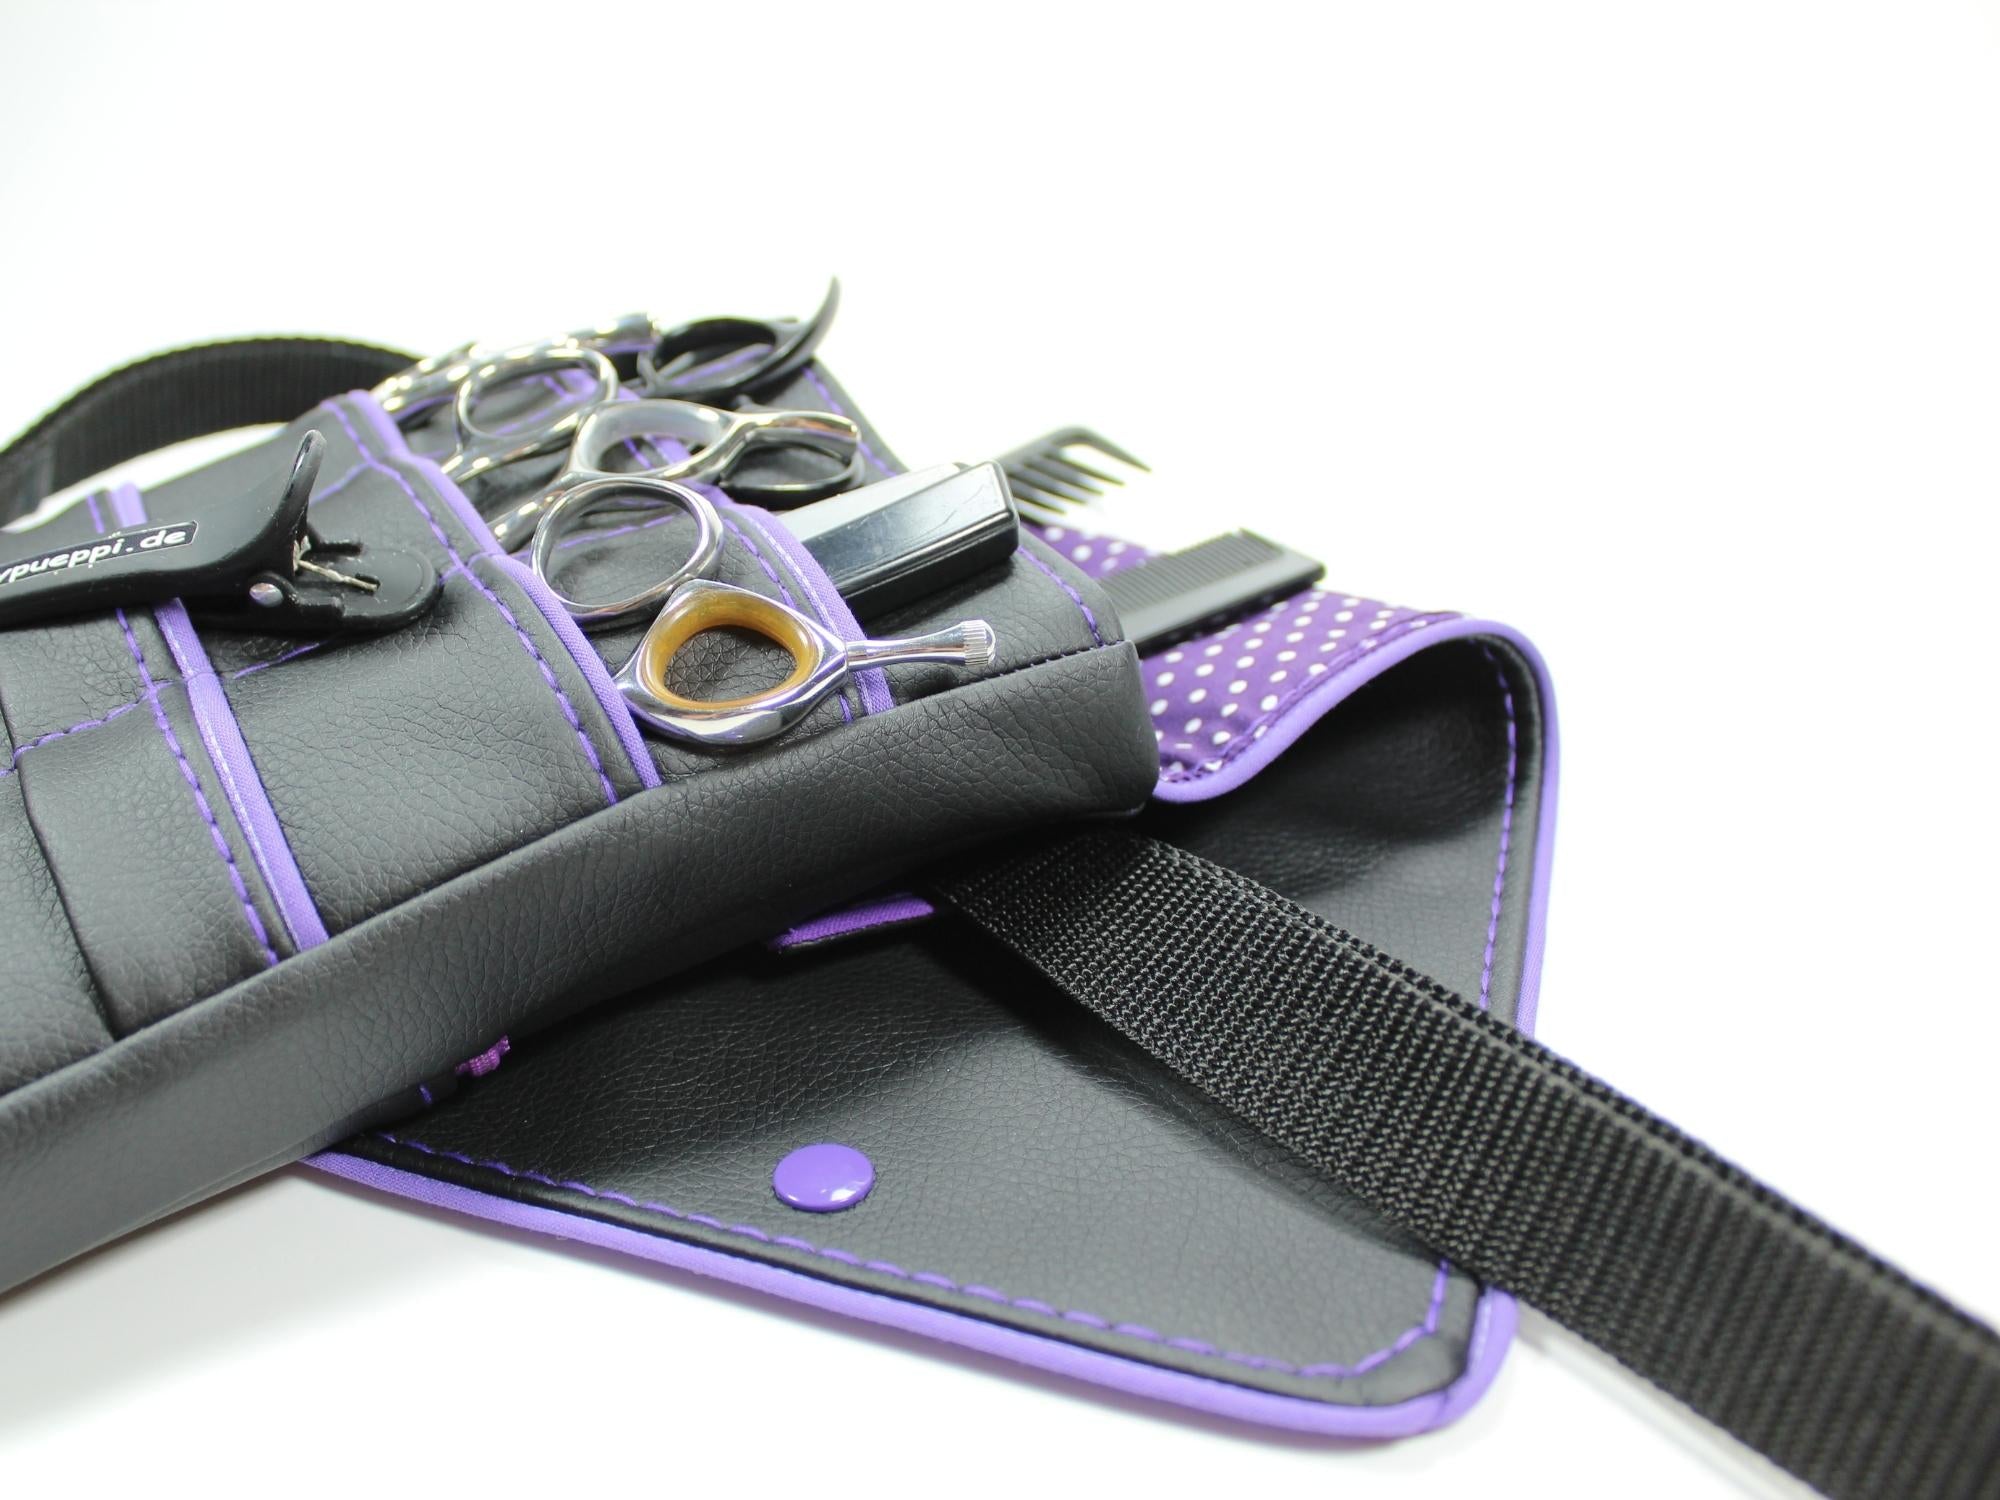 Kunstleder Friseur Werkzeugtasche in schwarz mit lila Innenstoff mit Punkten